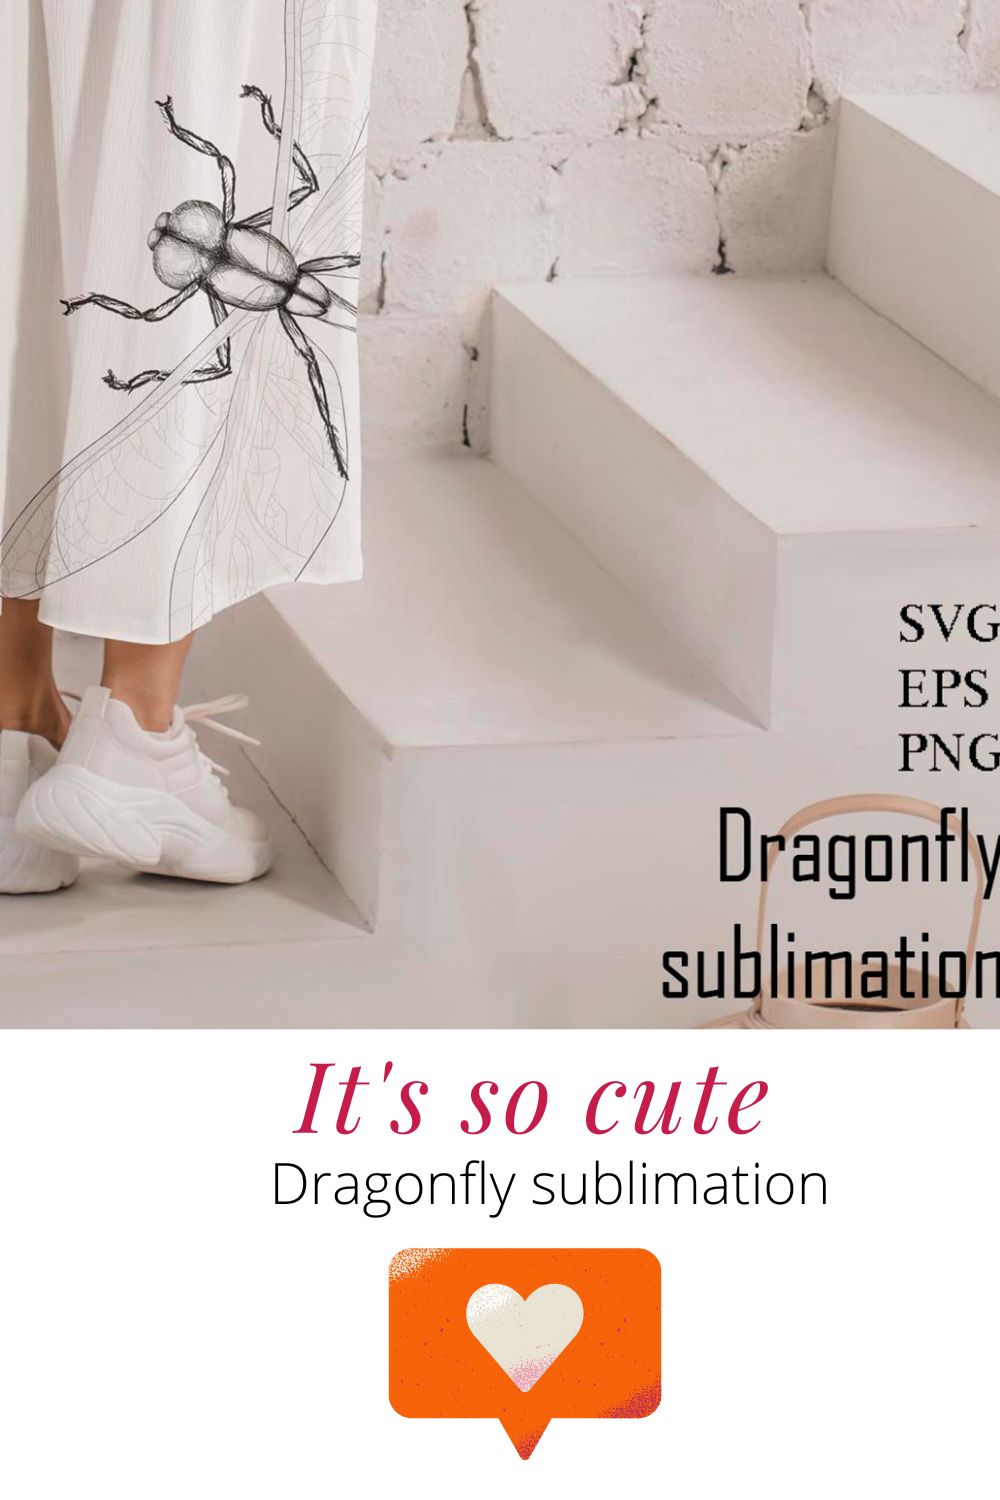 Dragonfly SVG PNG EPS Sublimation pinterest image.